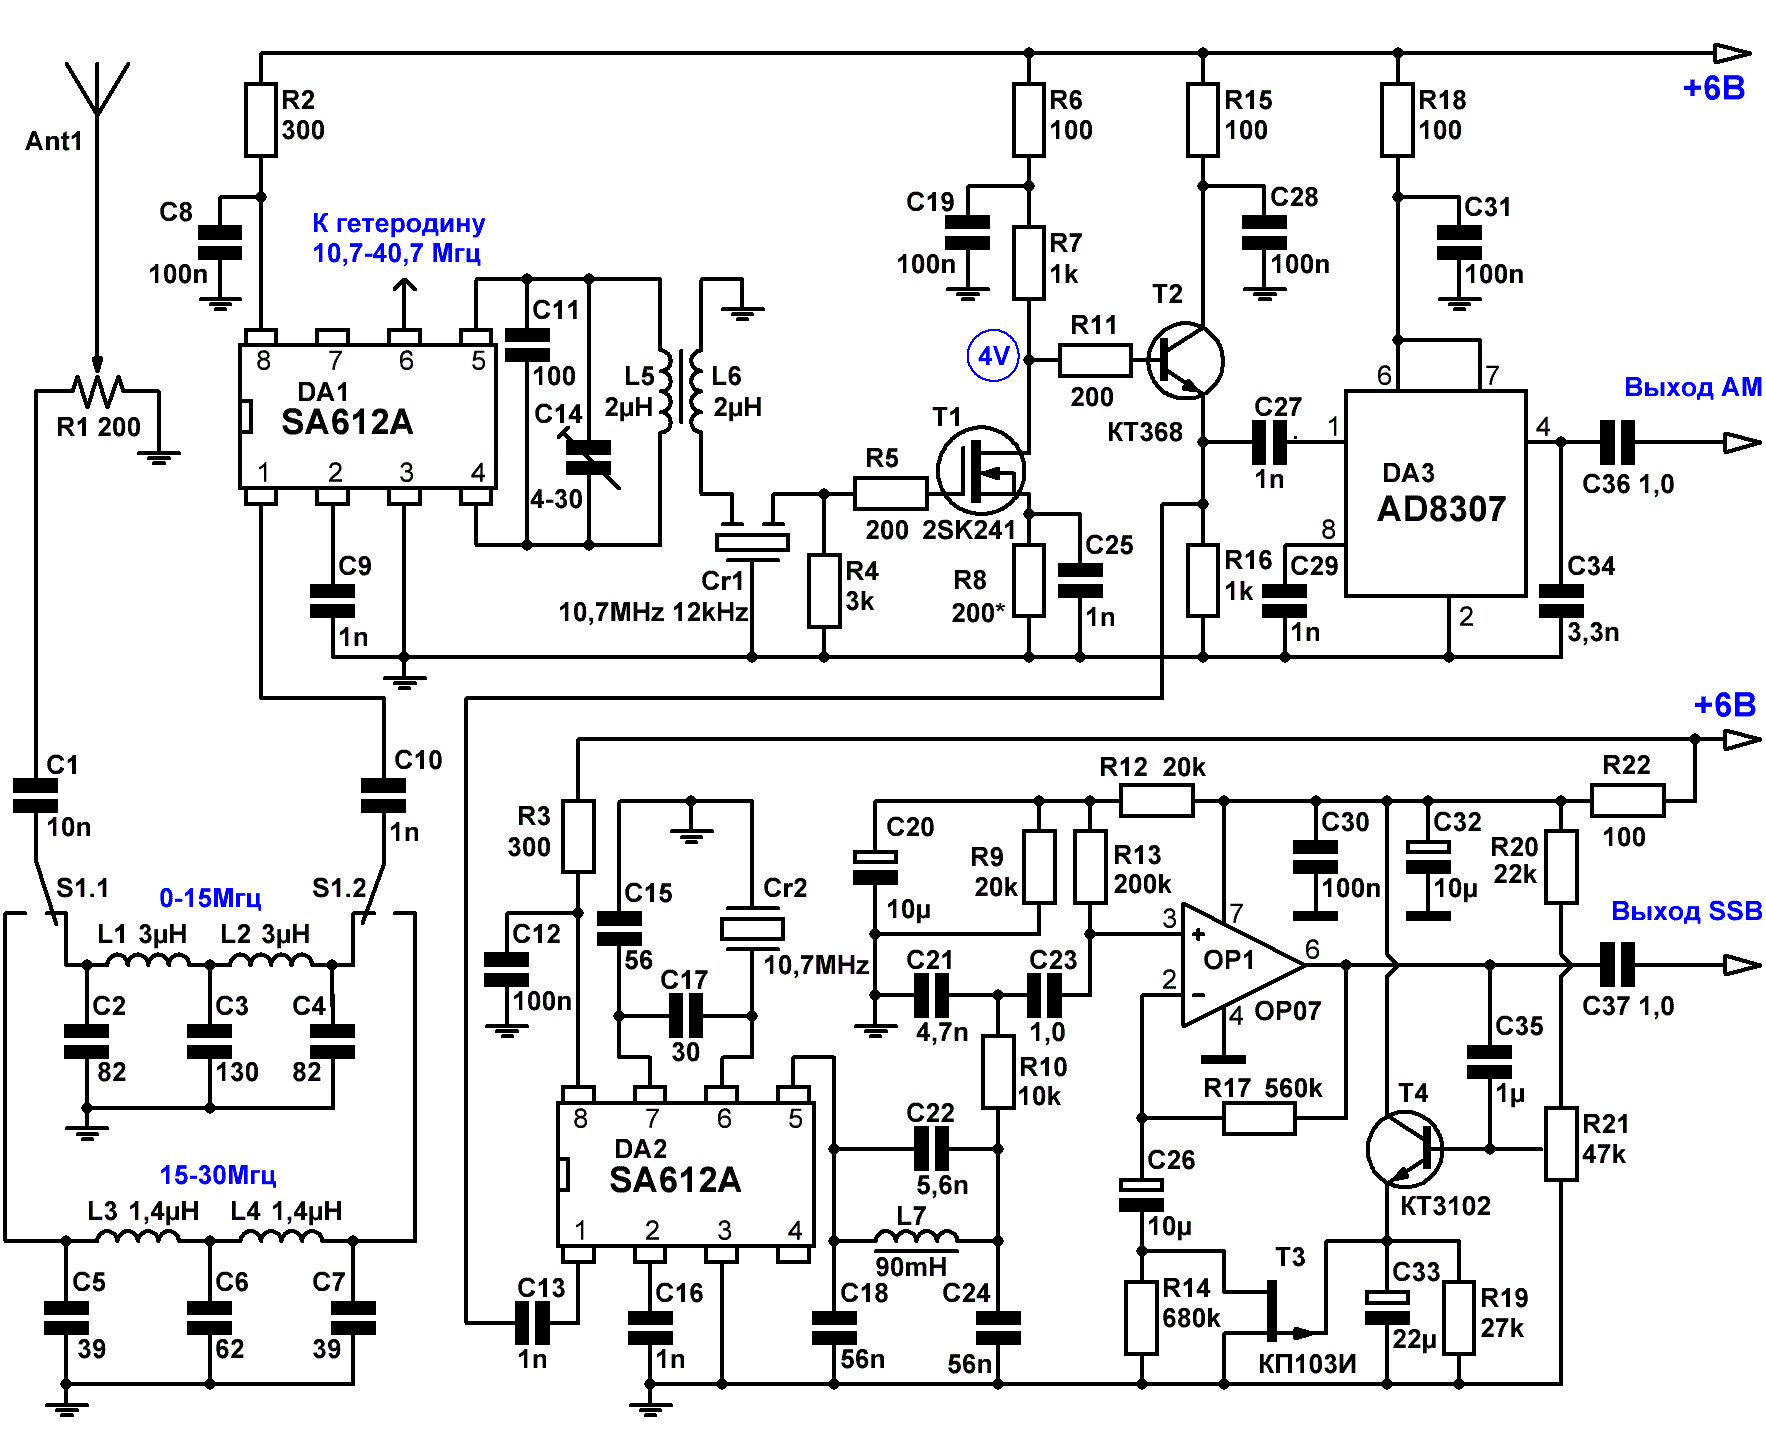 Схема простого радиоприемника на ИМС TDA1072